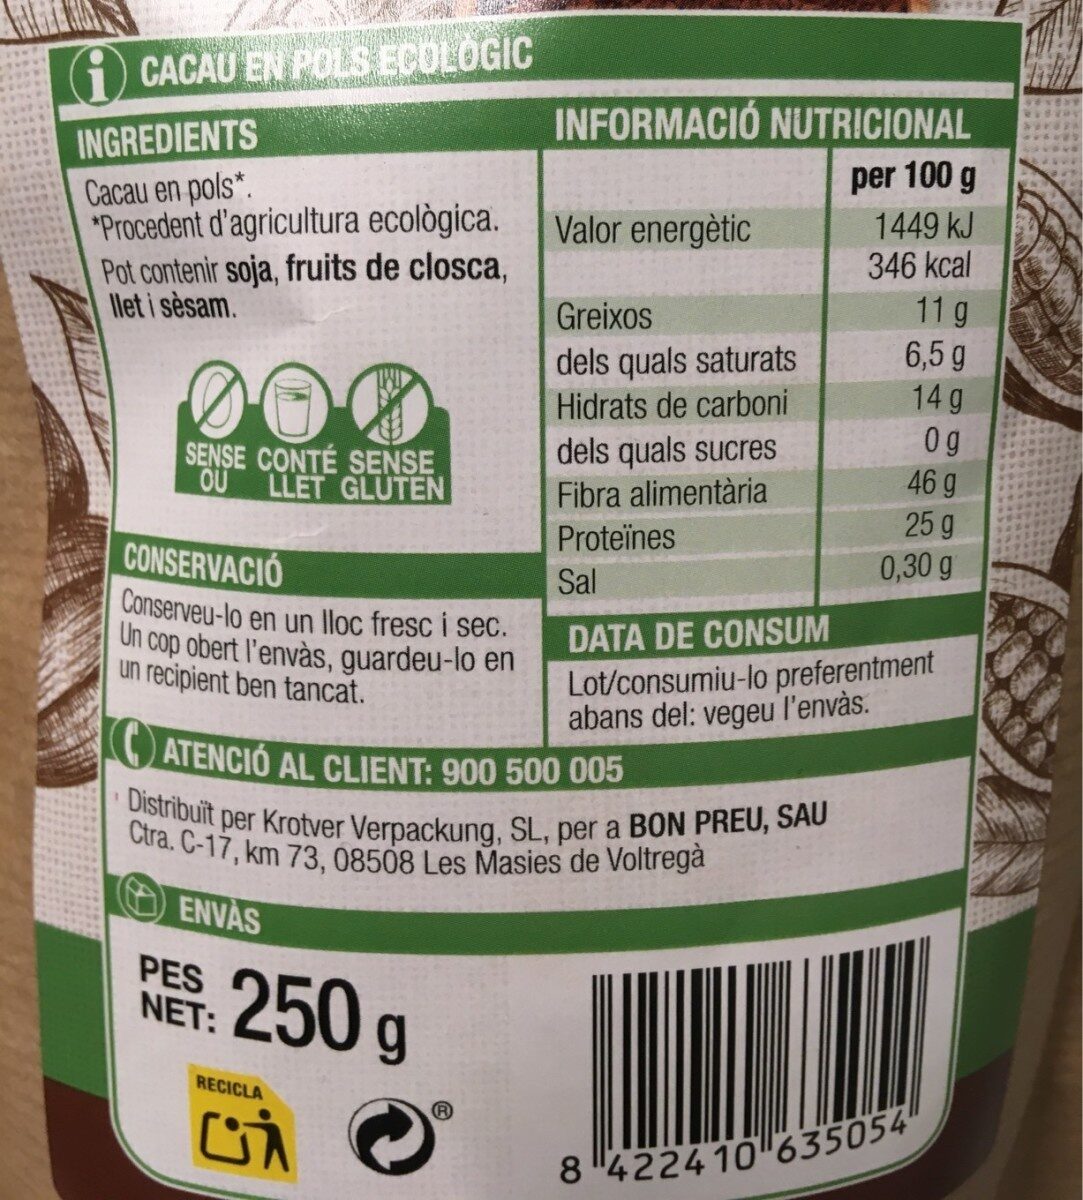 Cacao puro en polvo - Nutrition facts - es